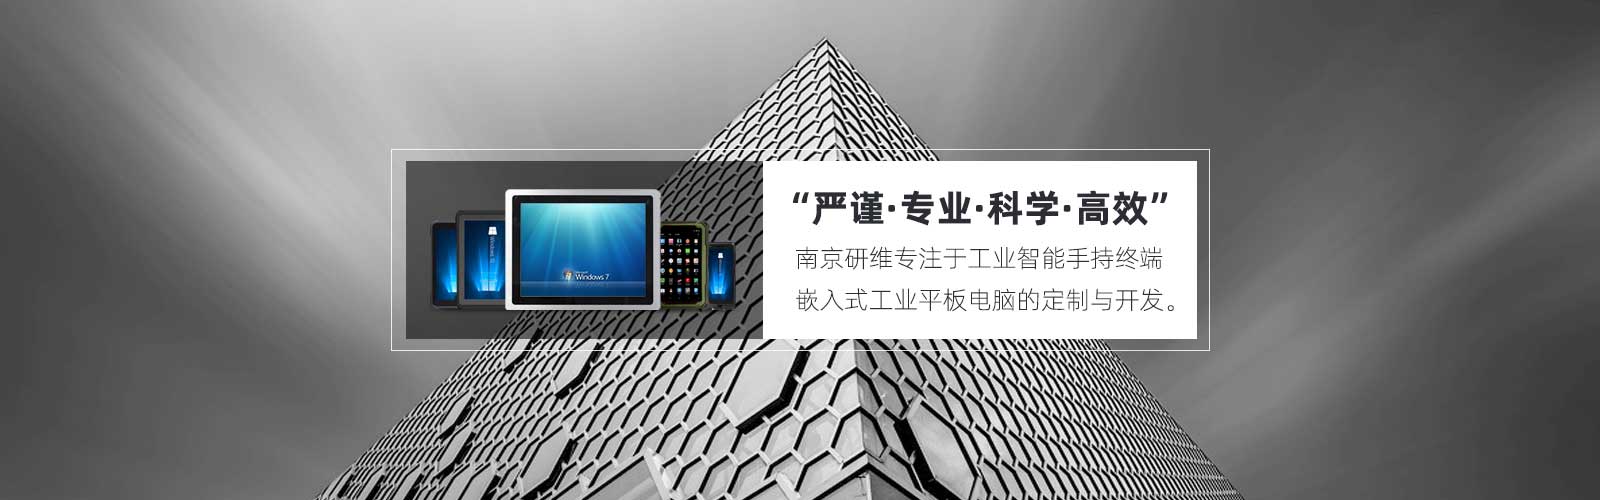 南京研维专注于工业智能手持终端、嵌入式工业平板电脑的定制和开发